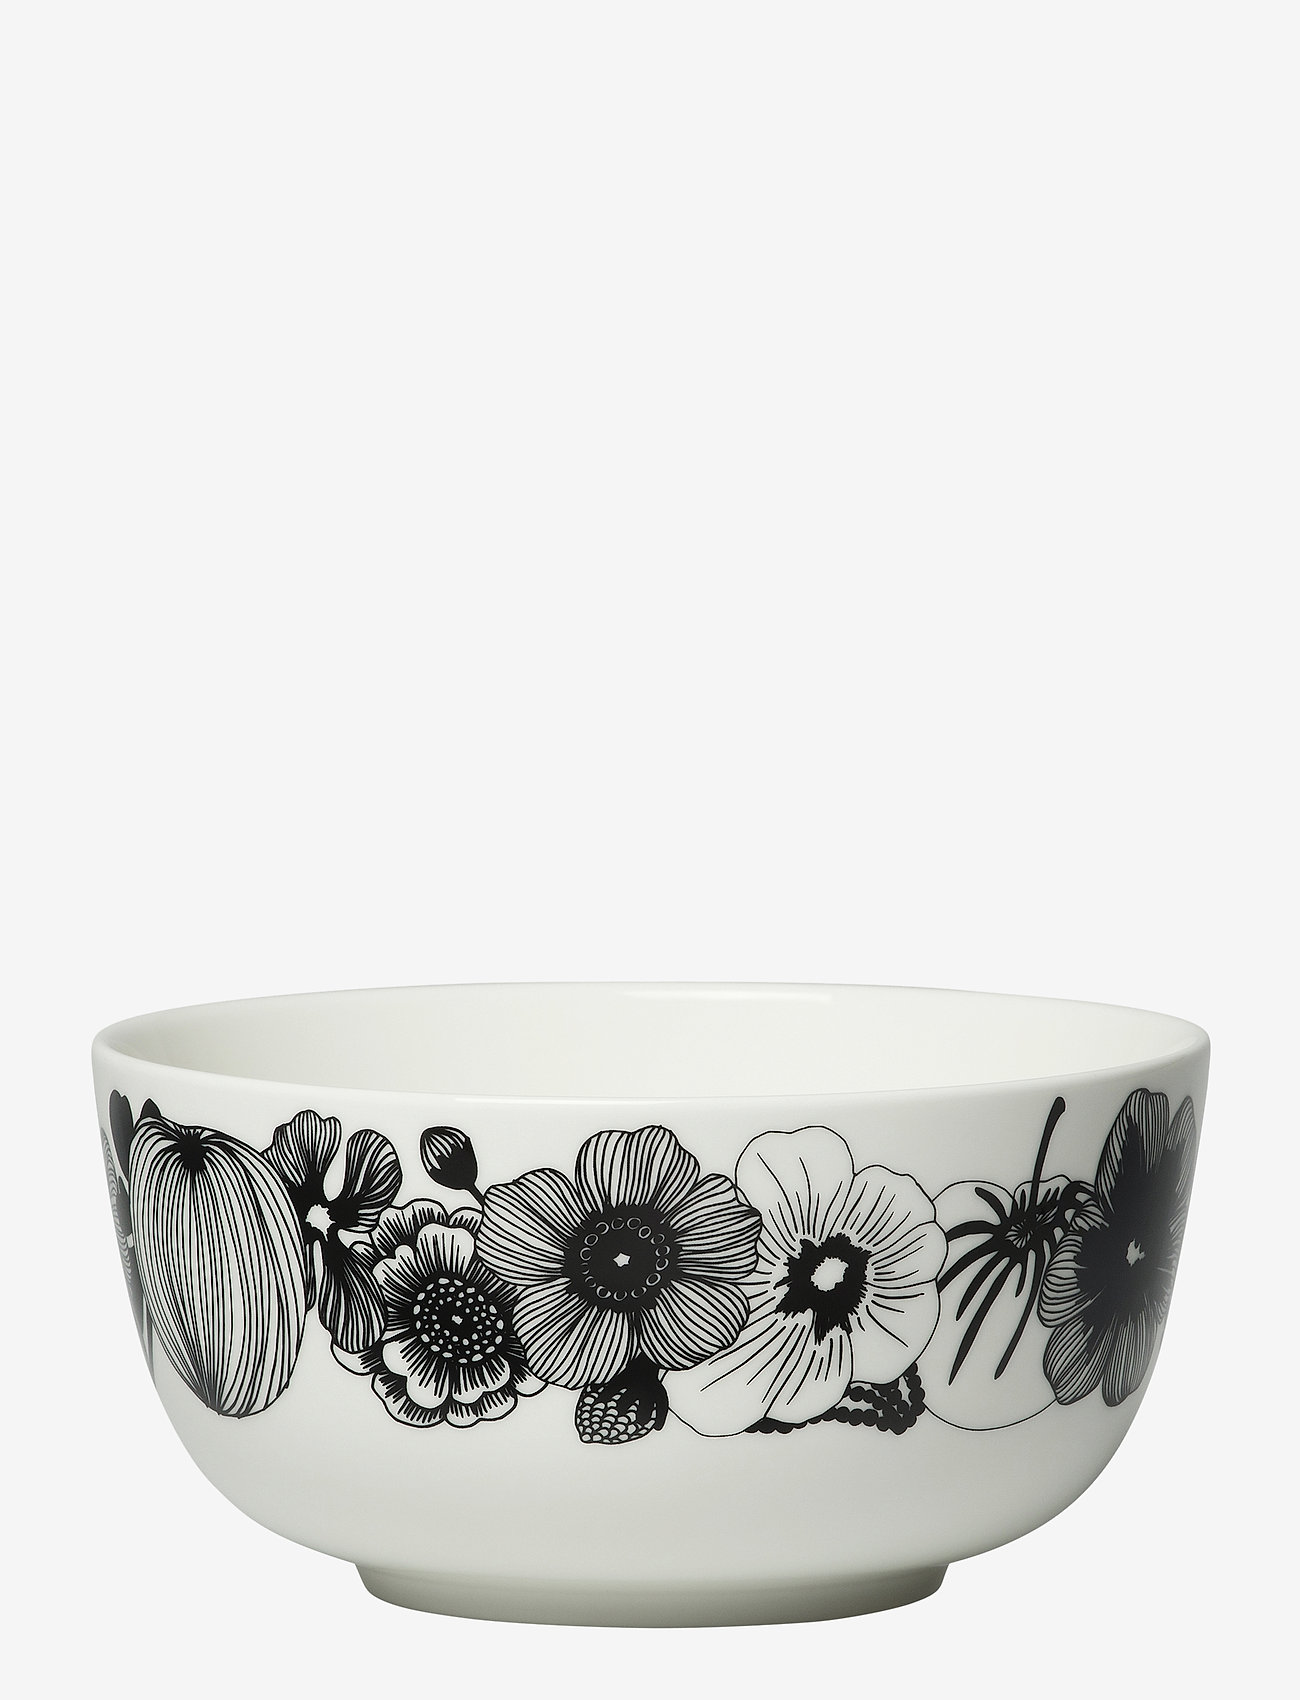 Marimekko Home - SIIRTOLAPUUTARHA BOWL - mažiausios kainos - white, black - 0